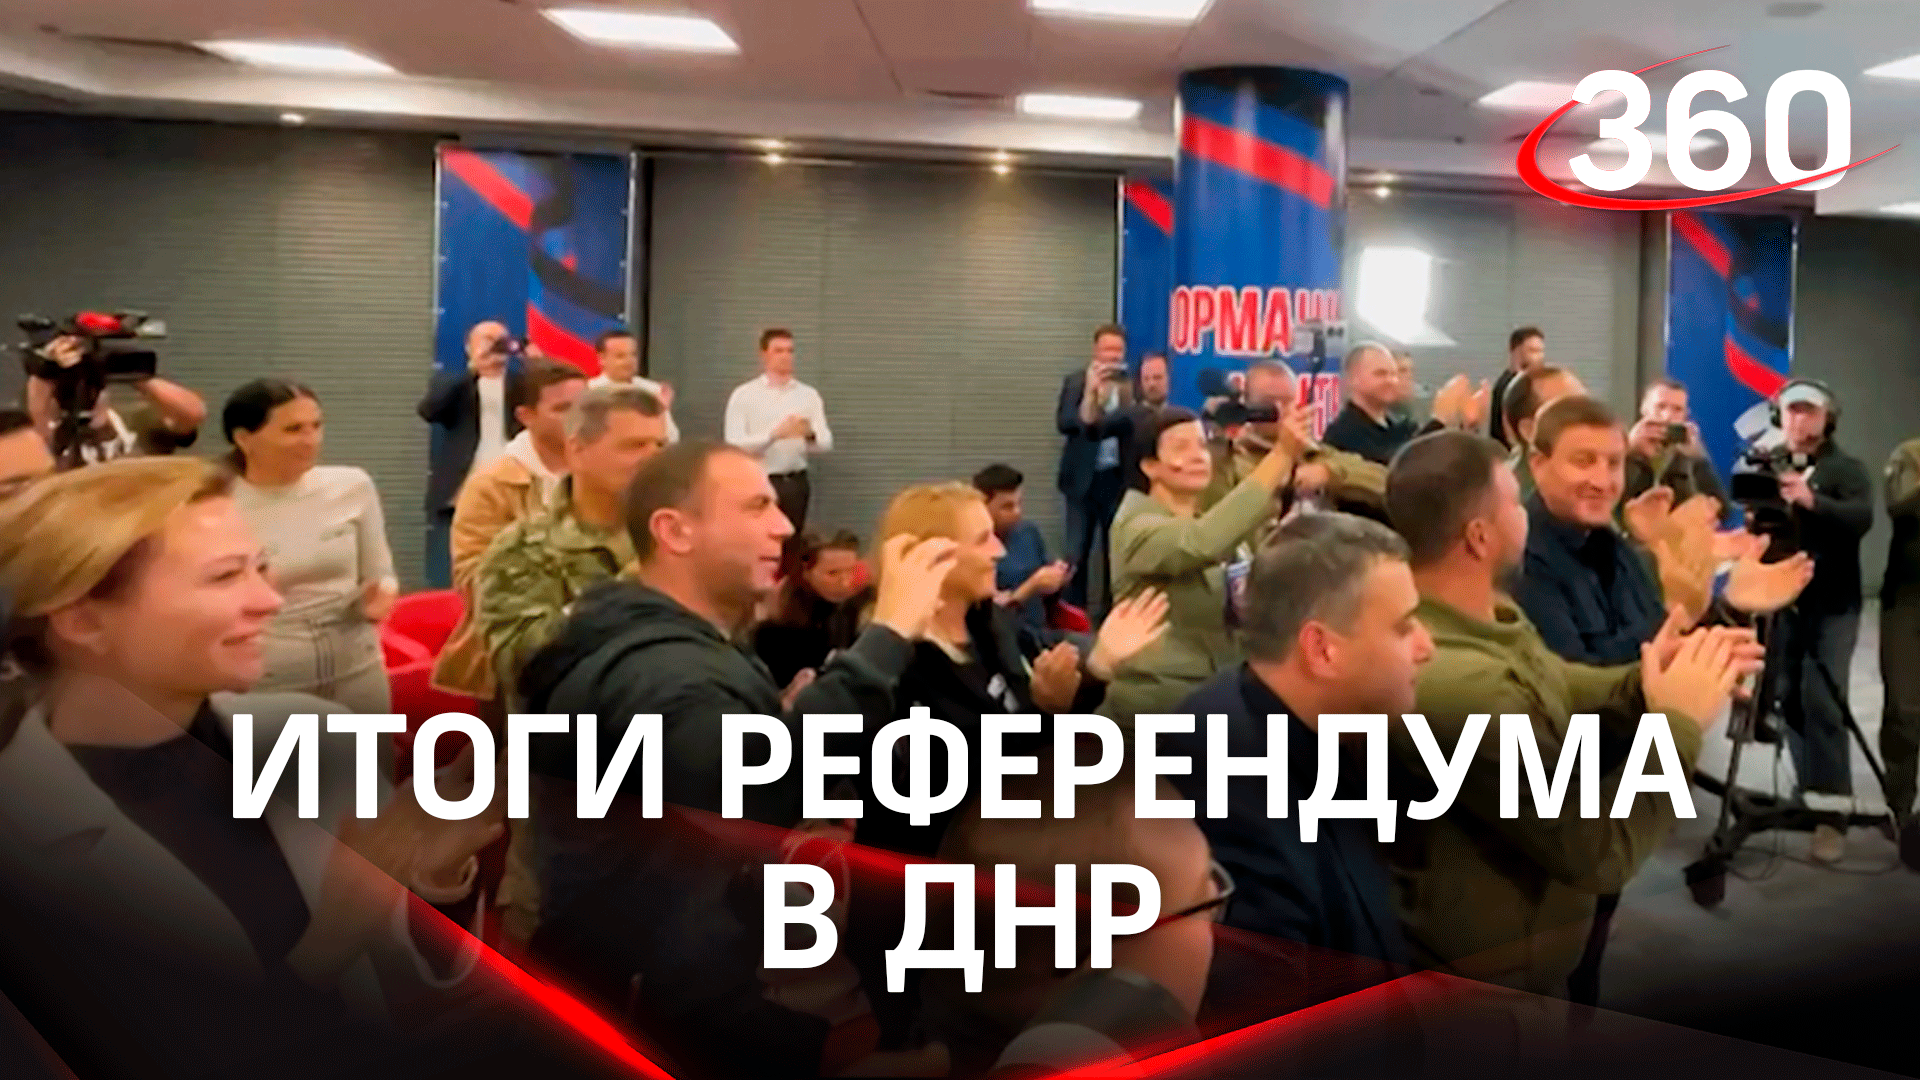 Итоги референдума ДНР: аплодисменты и крики «Россия». Сколько процентов населения за?